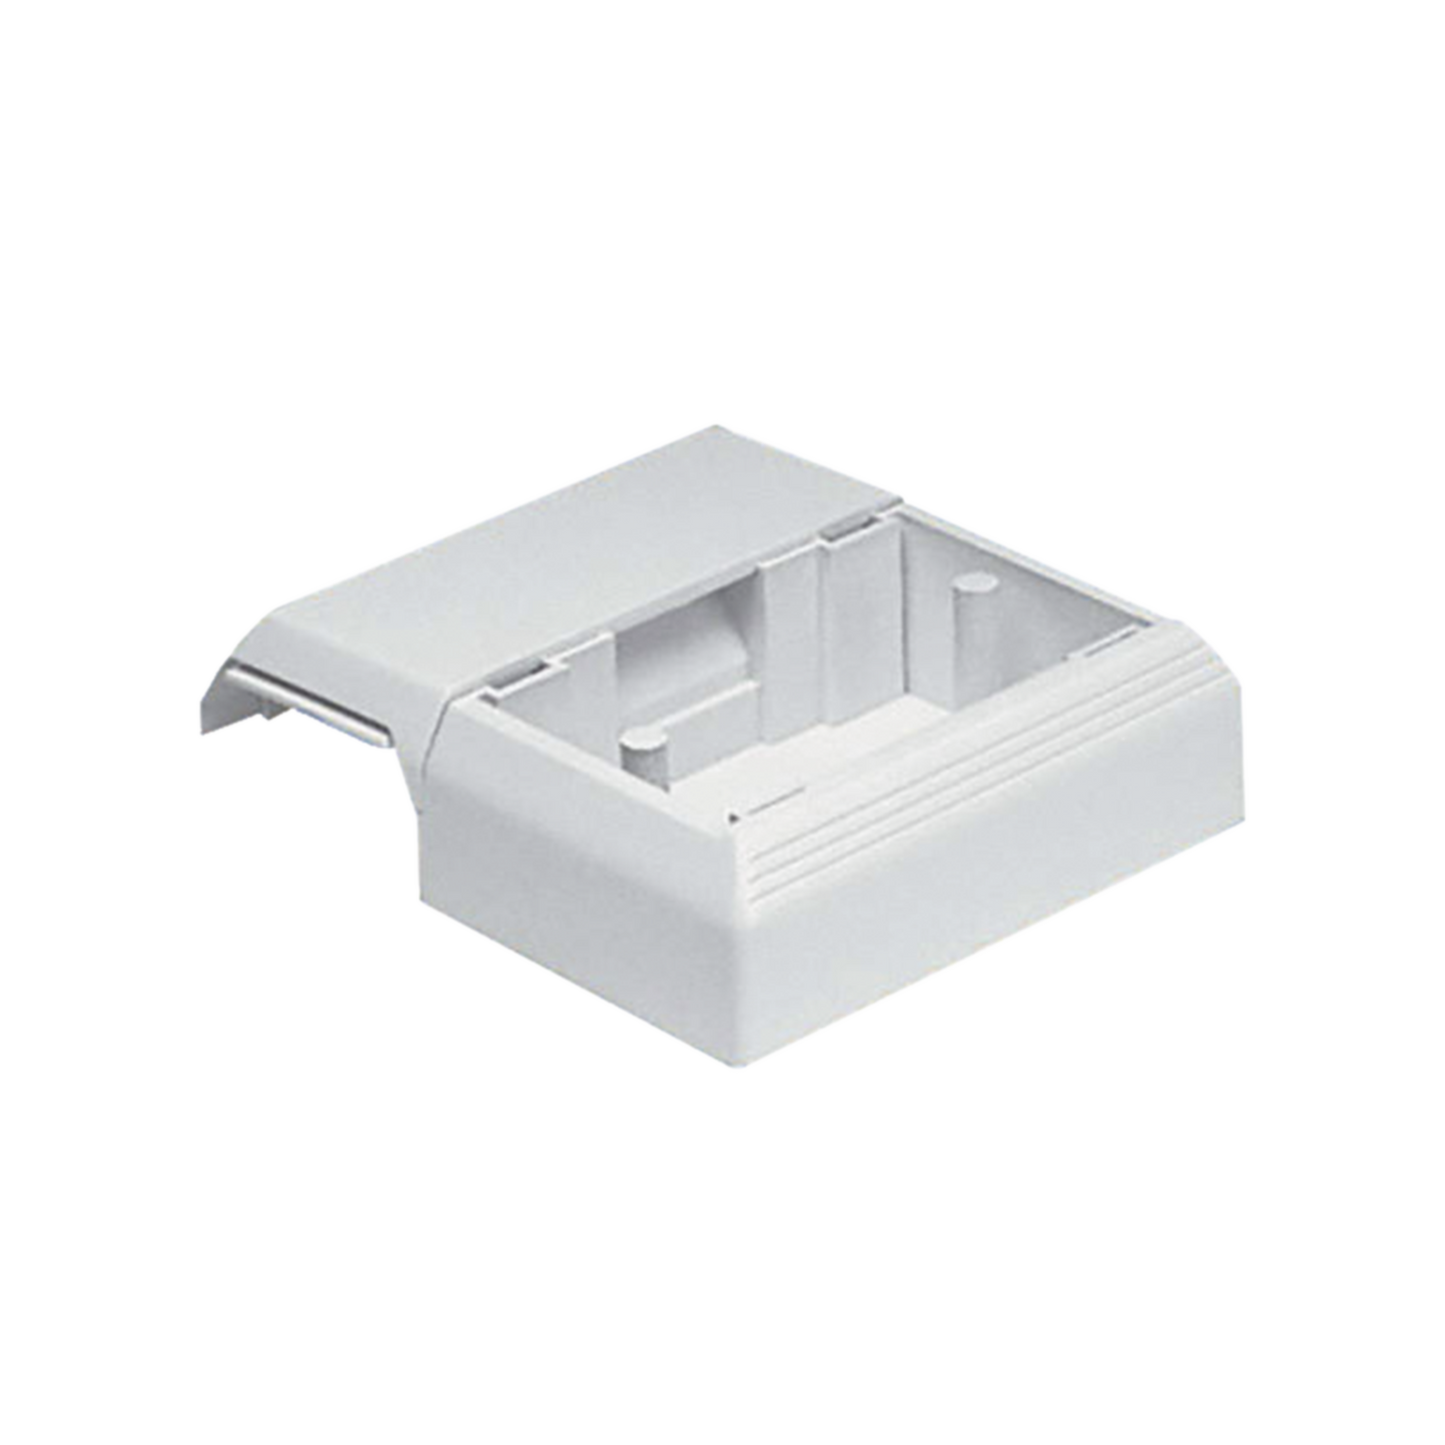 Caja Superficial Con Bisagras de Instalación a Presión, Para Canaletas T45, Material PVC Rígido, Color Blanco Mate